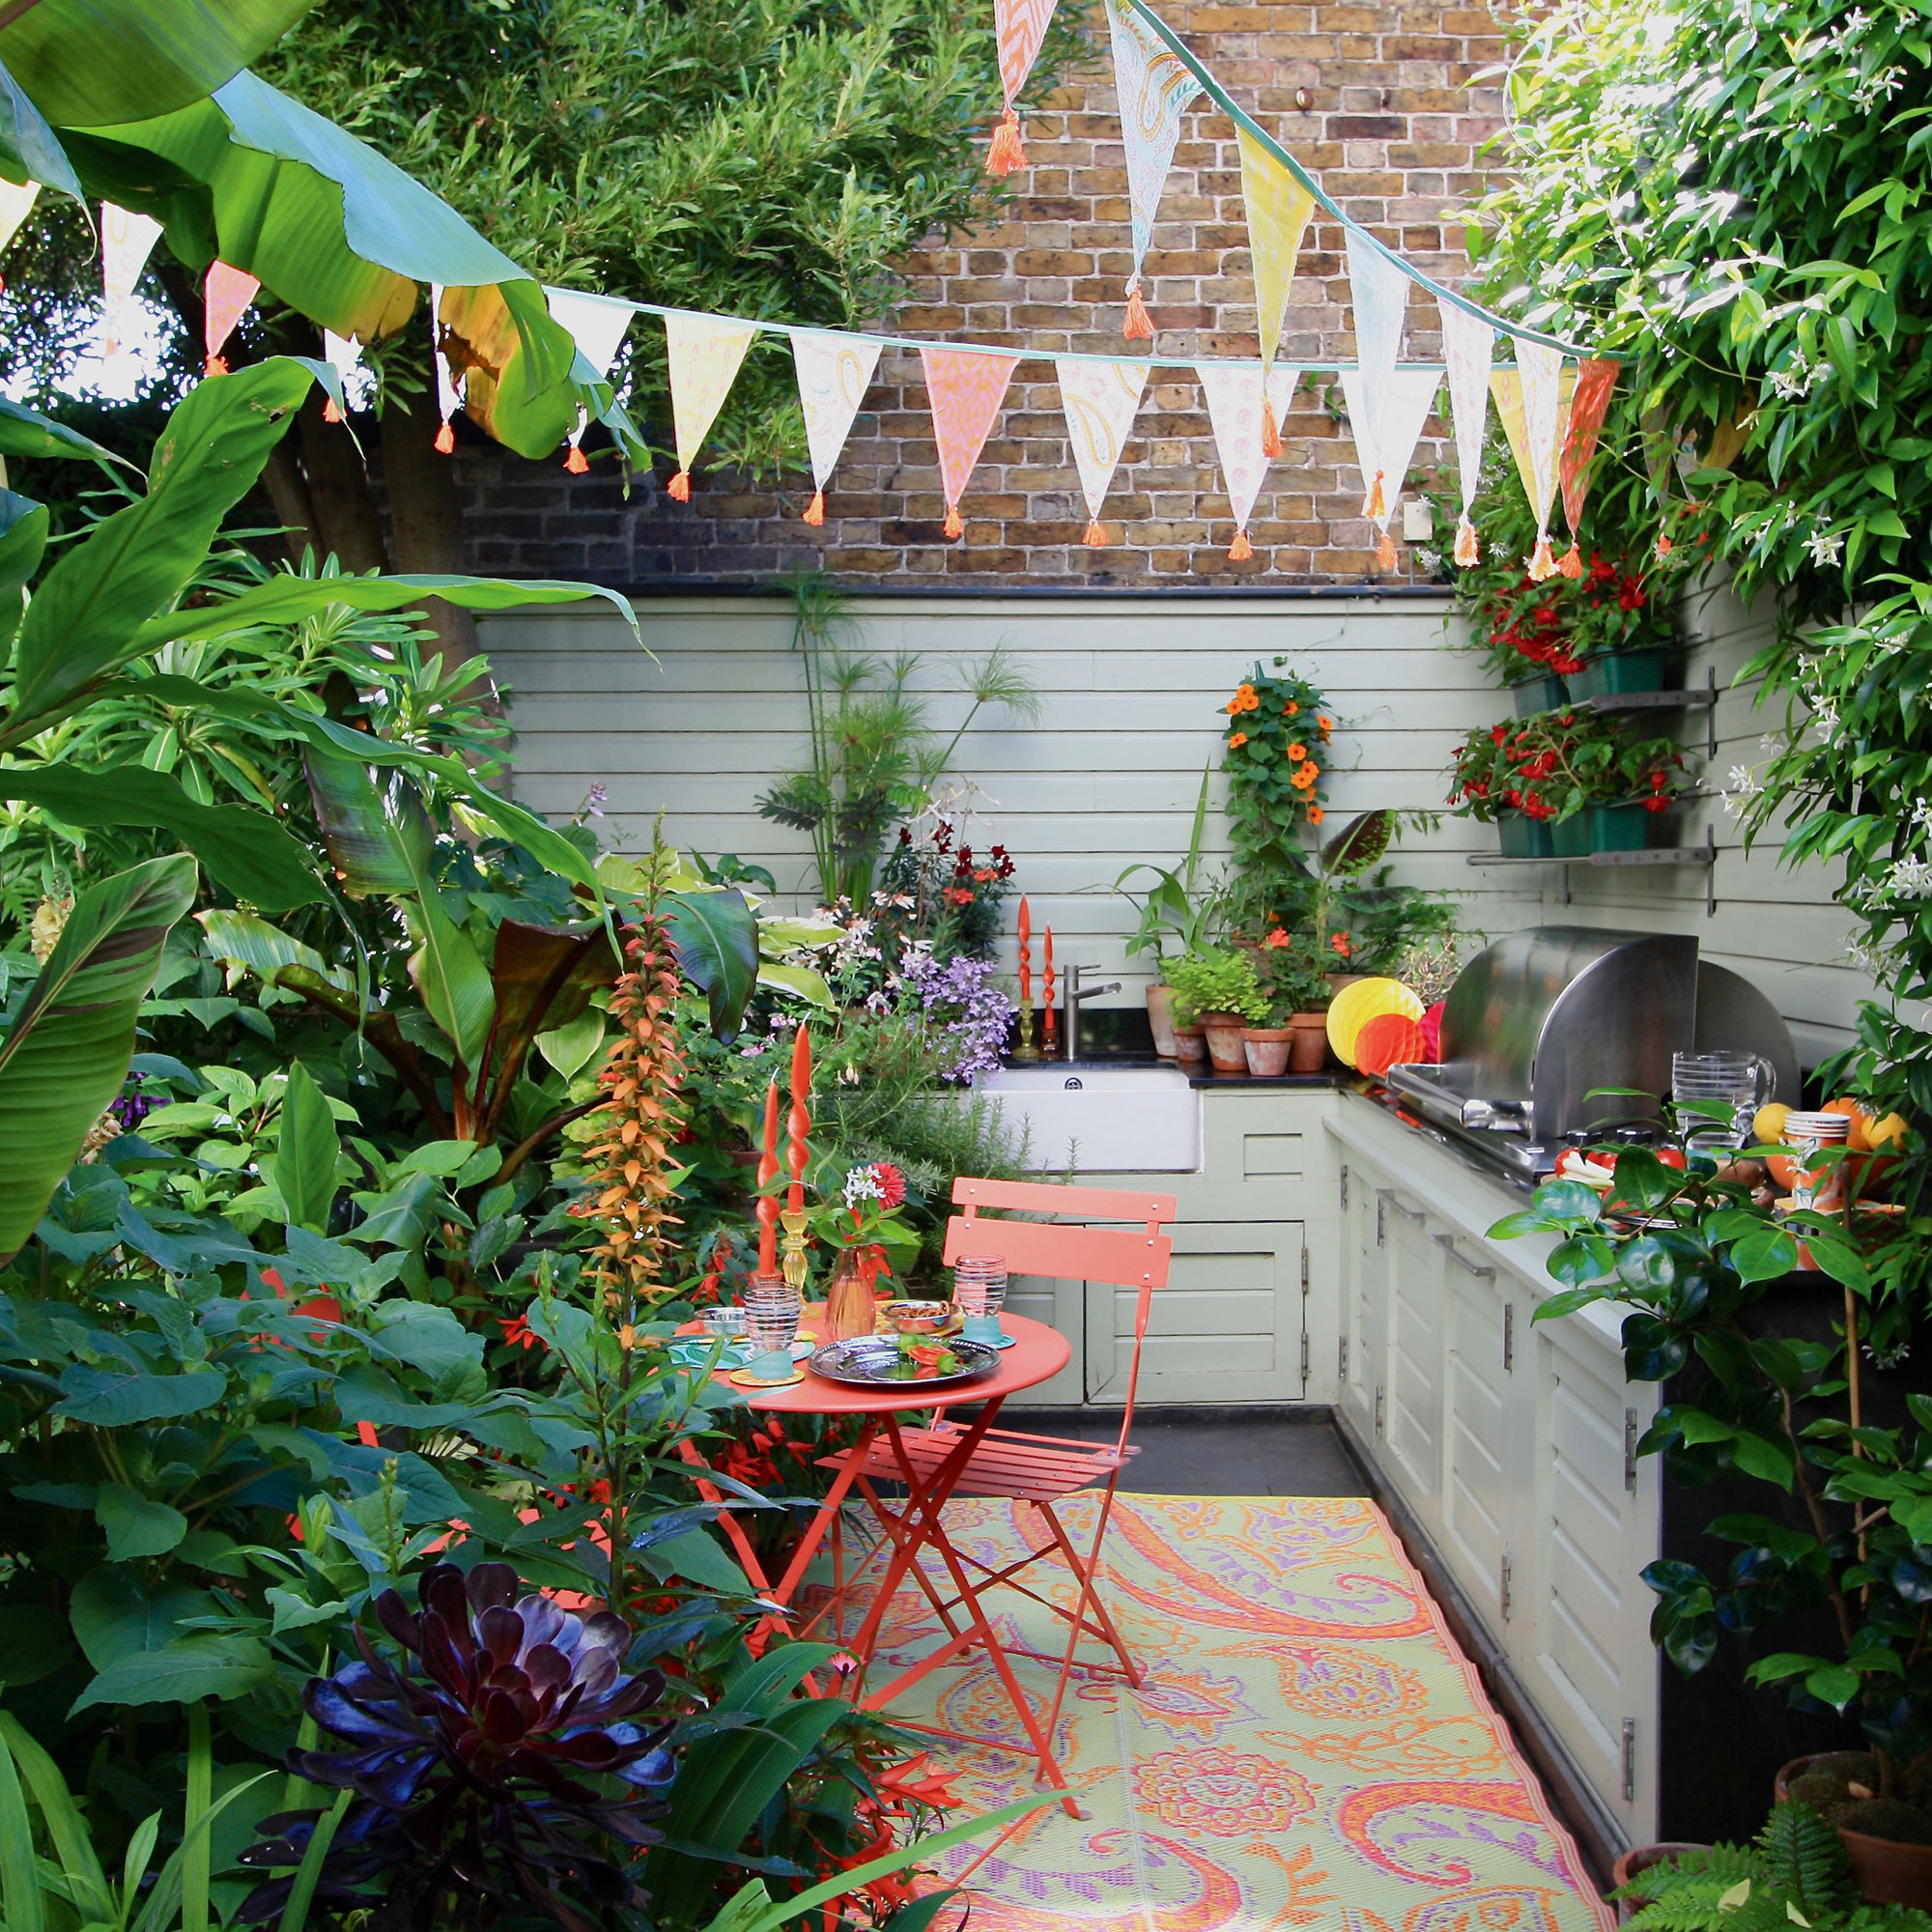 Outdoor kitchen in small garden